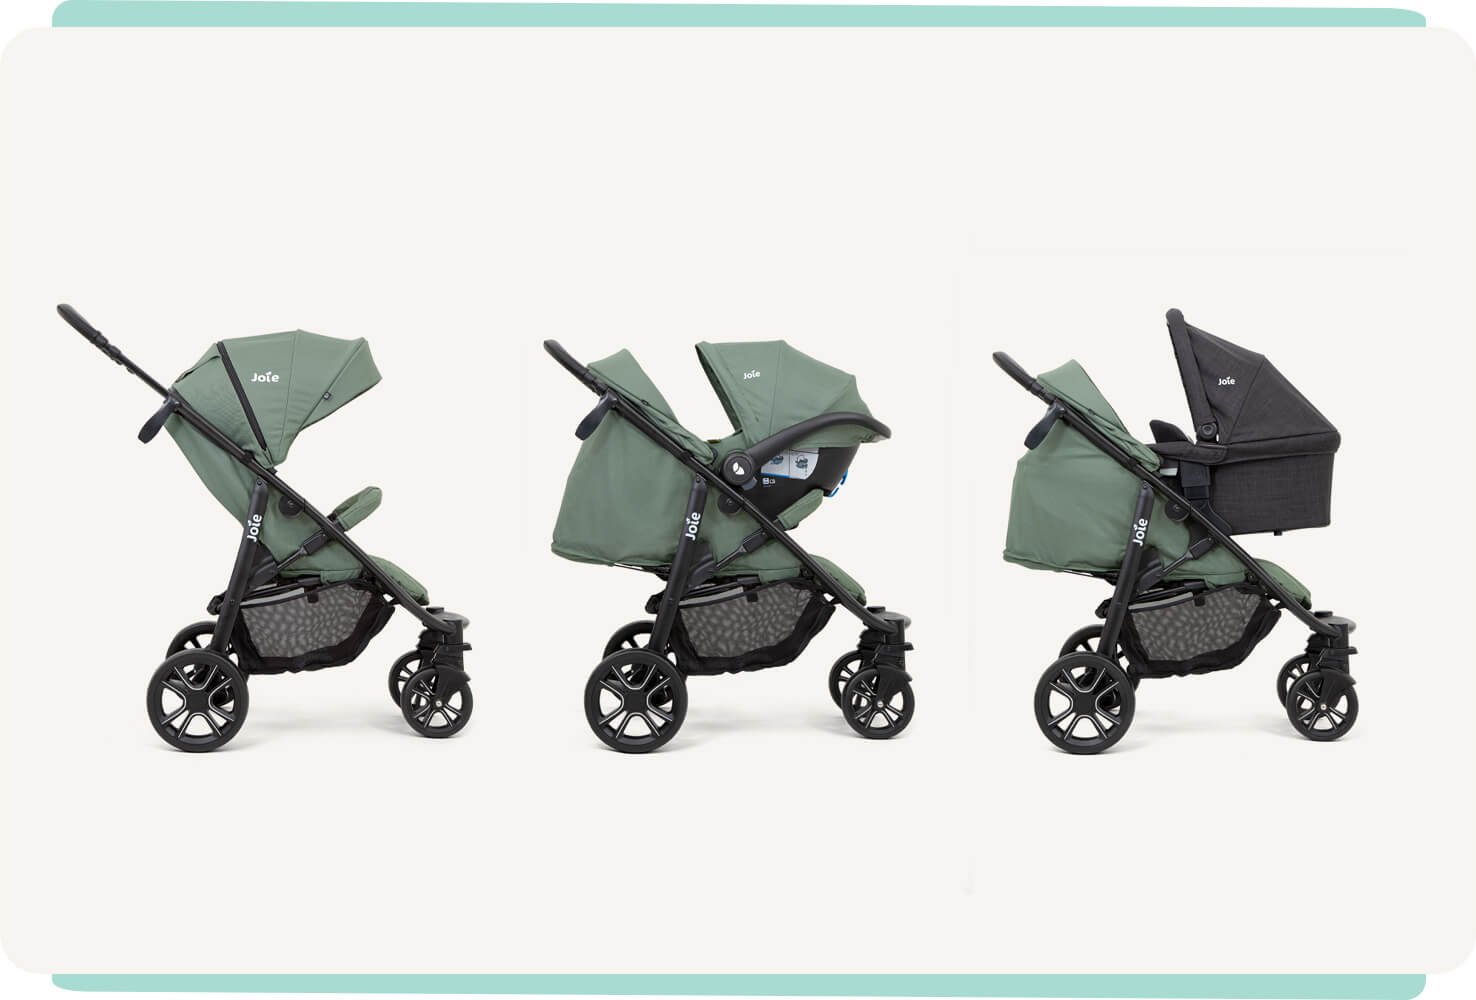 3 poussettes litetrax 4 dlx, coloris vert, vues de profil et montrant les 3 modes d’utilisation : poussette, système de voyage avec siège auto pour bébé et système de voyage avec nacelle.